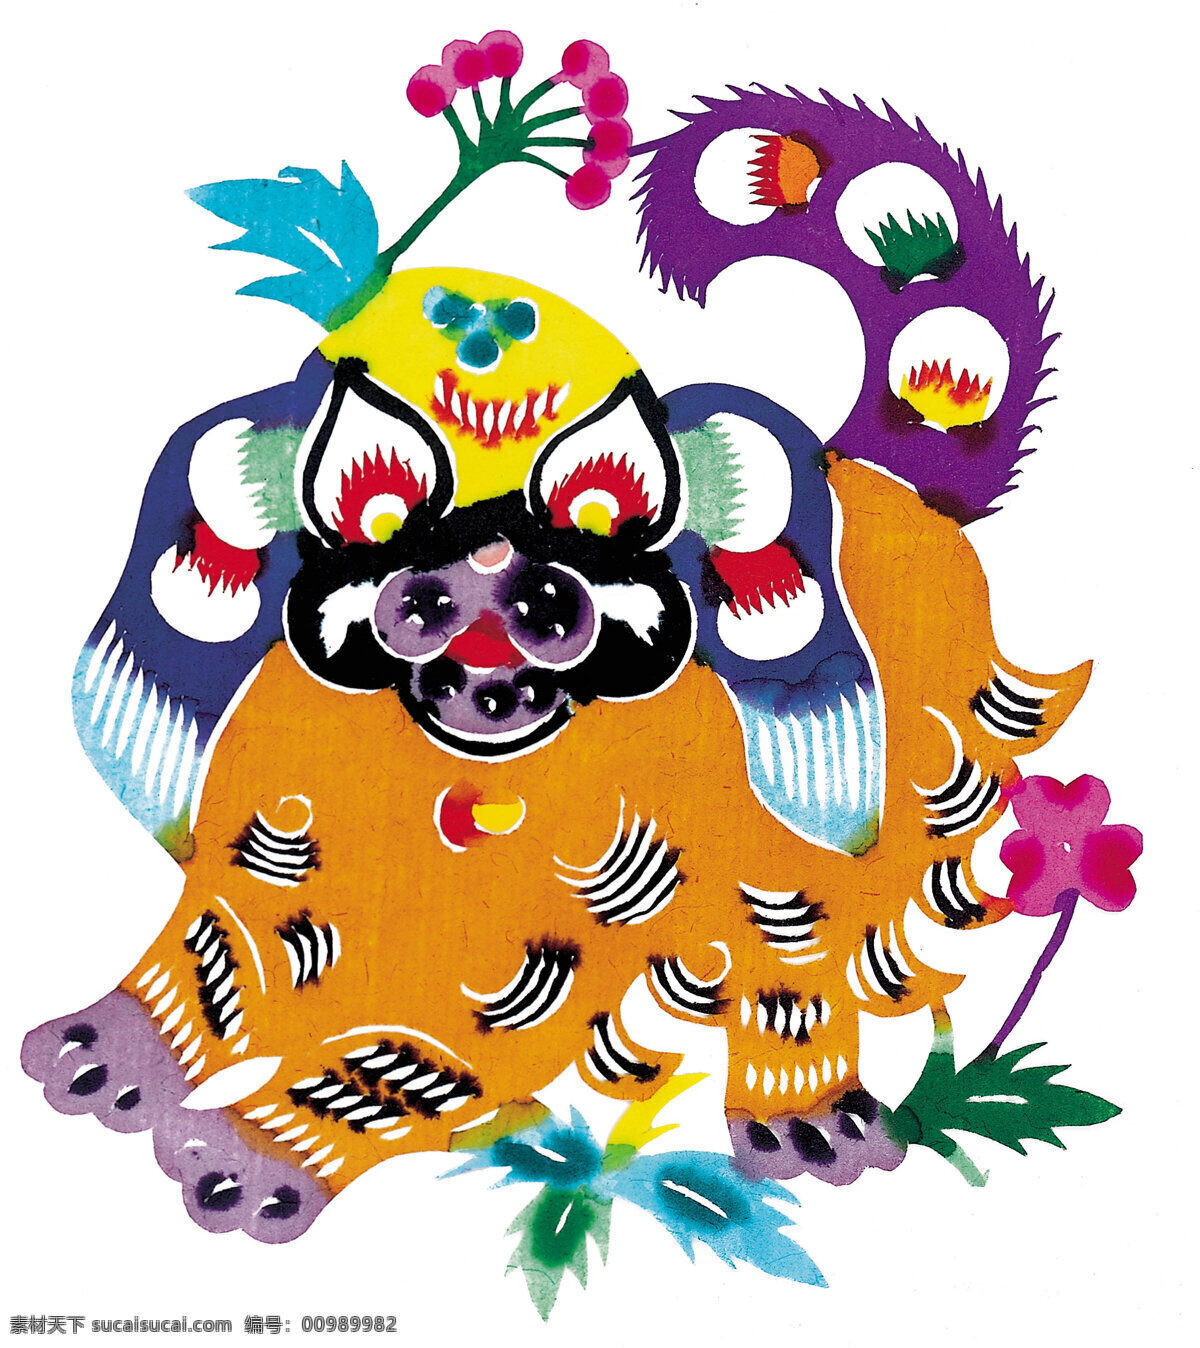 吉祥 图案 传统文化 吉祥图案 剪纸 贴画 中国风 文化艺术